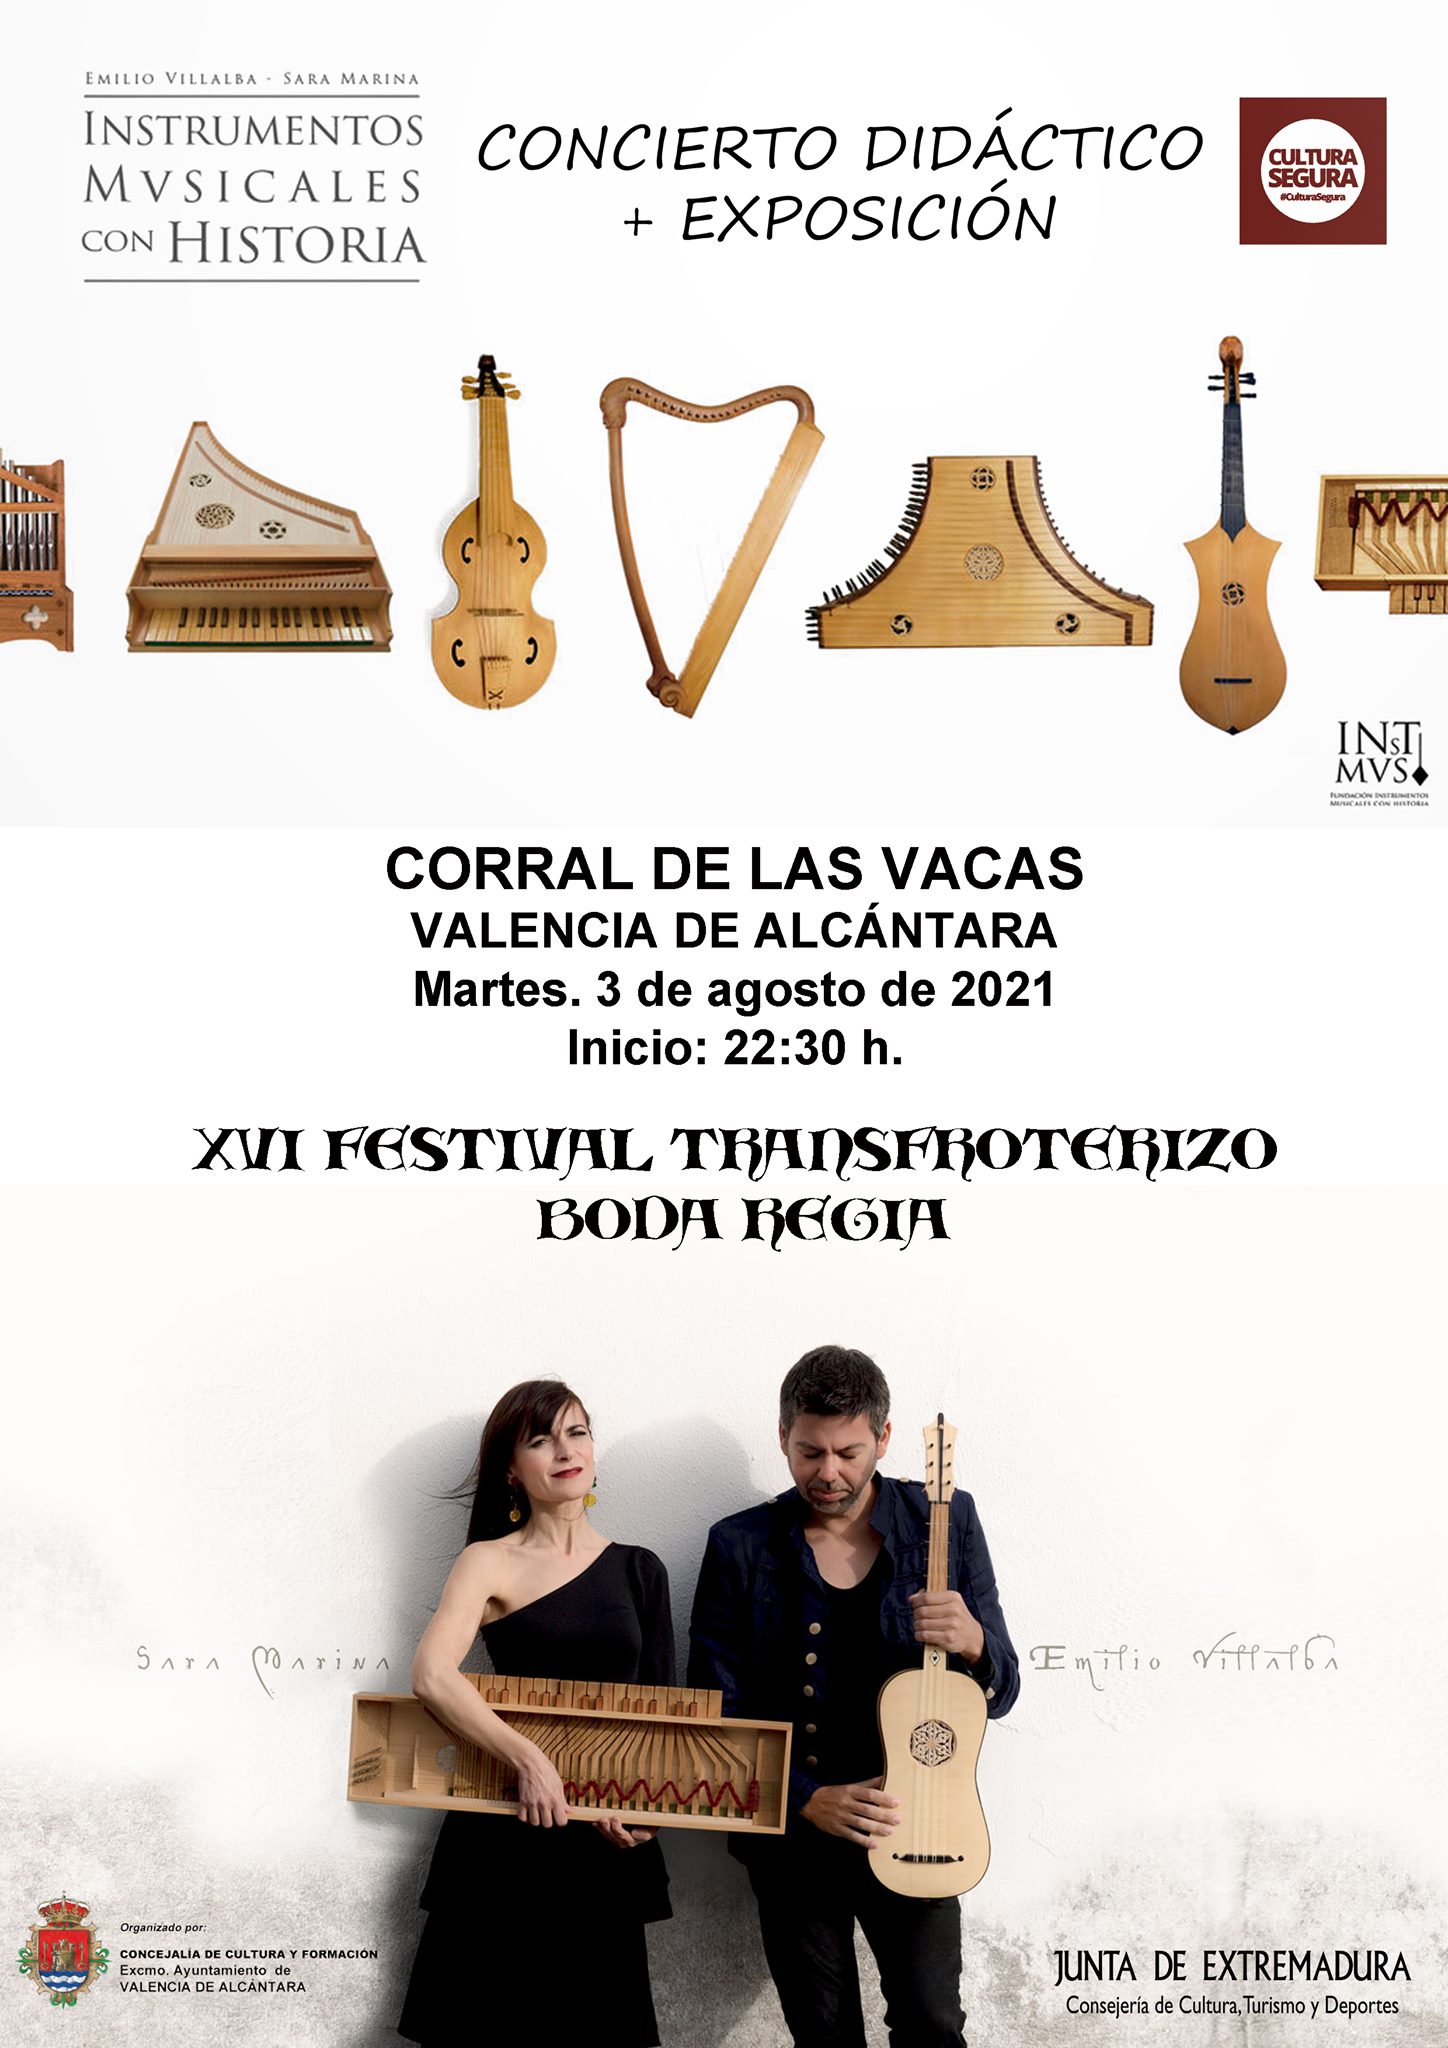 CONCIERTO DE SARA MARINA Y EMILIO VILLALBA 'Instrumentos Musicales con Historia'